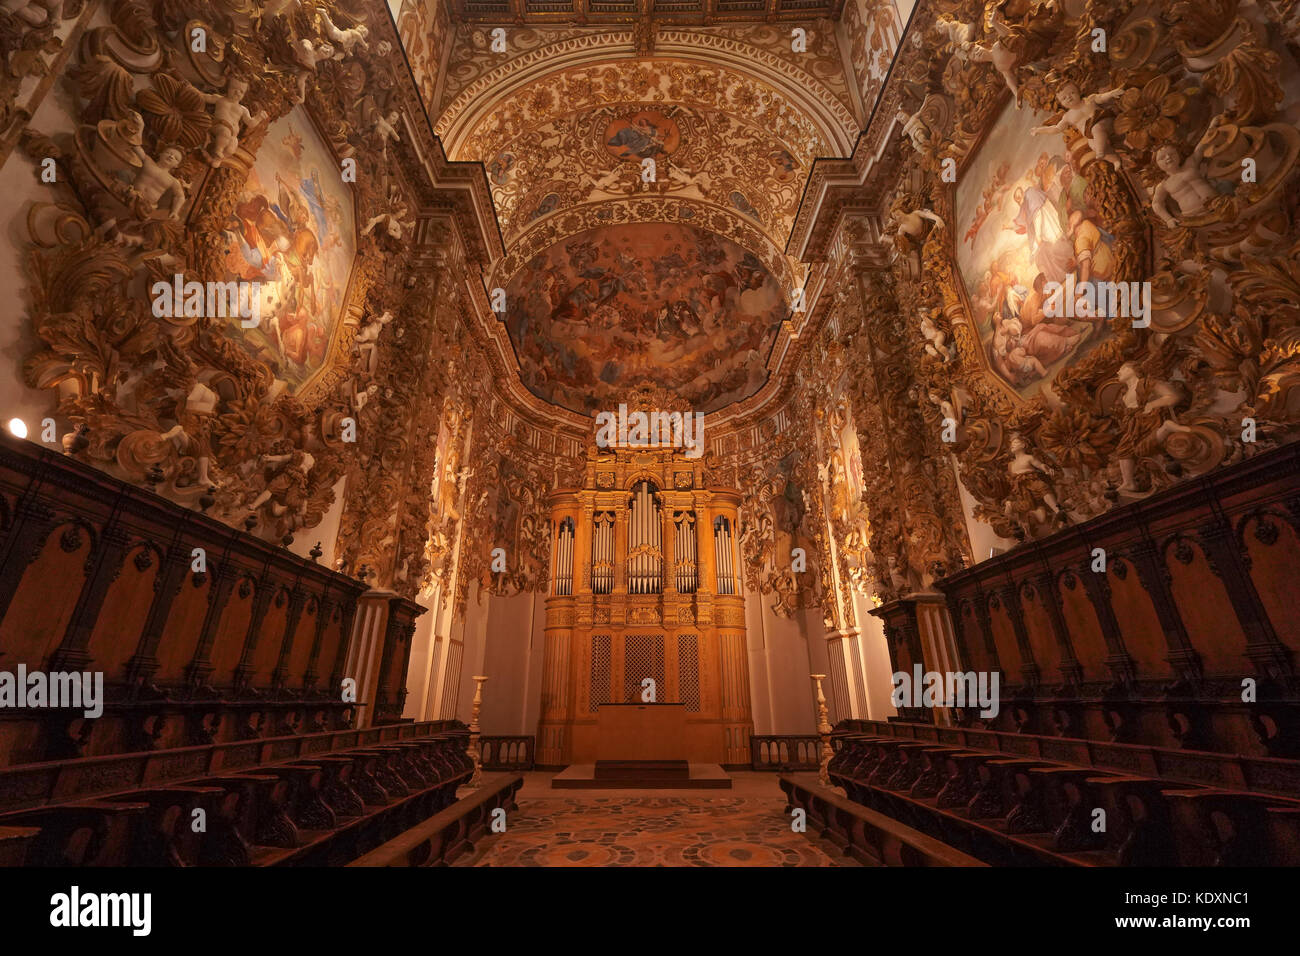 Gli interni della cattedrale barocca in agrigento. da una serie di foto di viaggio in Sicilia, Italia. photo Data: giovedì, 5 ottobre 2017. foto cred Foto Stock